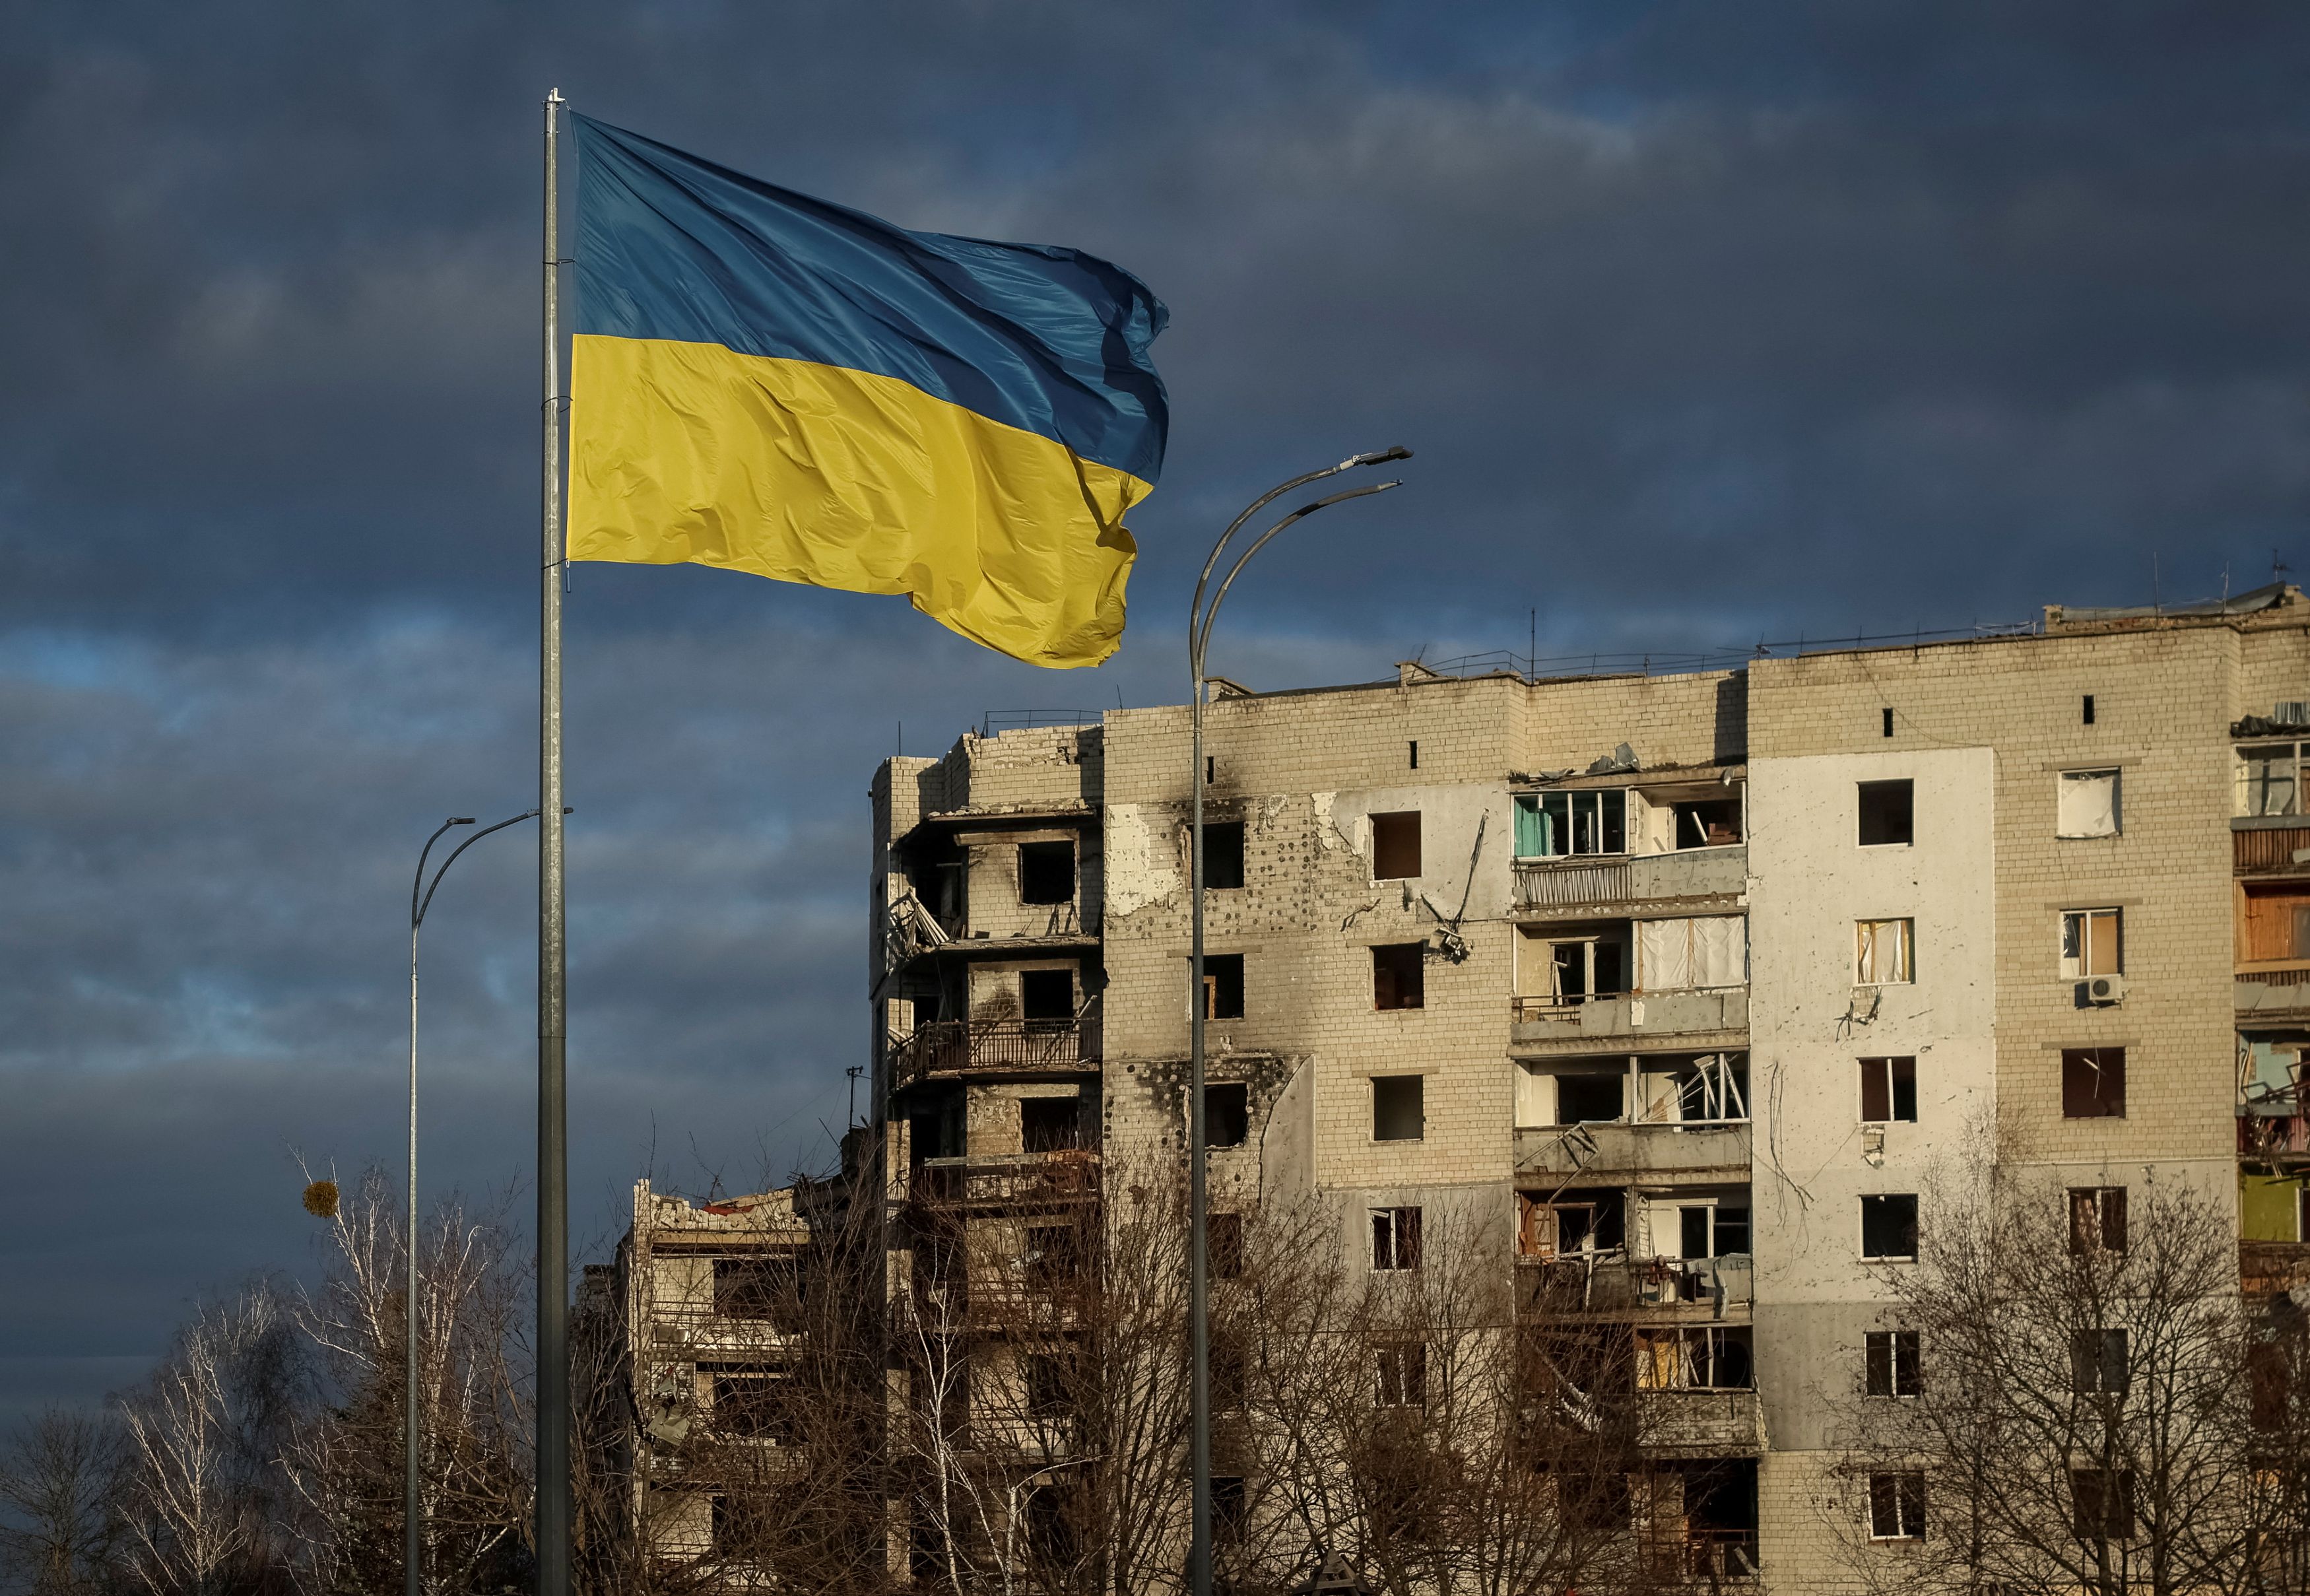 Ουκρανία: Η Γενική Συνέλευση του ΟΗΕ θα ζητήσει «βιώσιμη ειρήνη», στον ένα χρόνο από την έναρξη του πολέμου